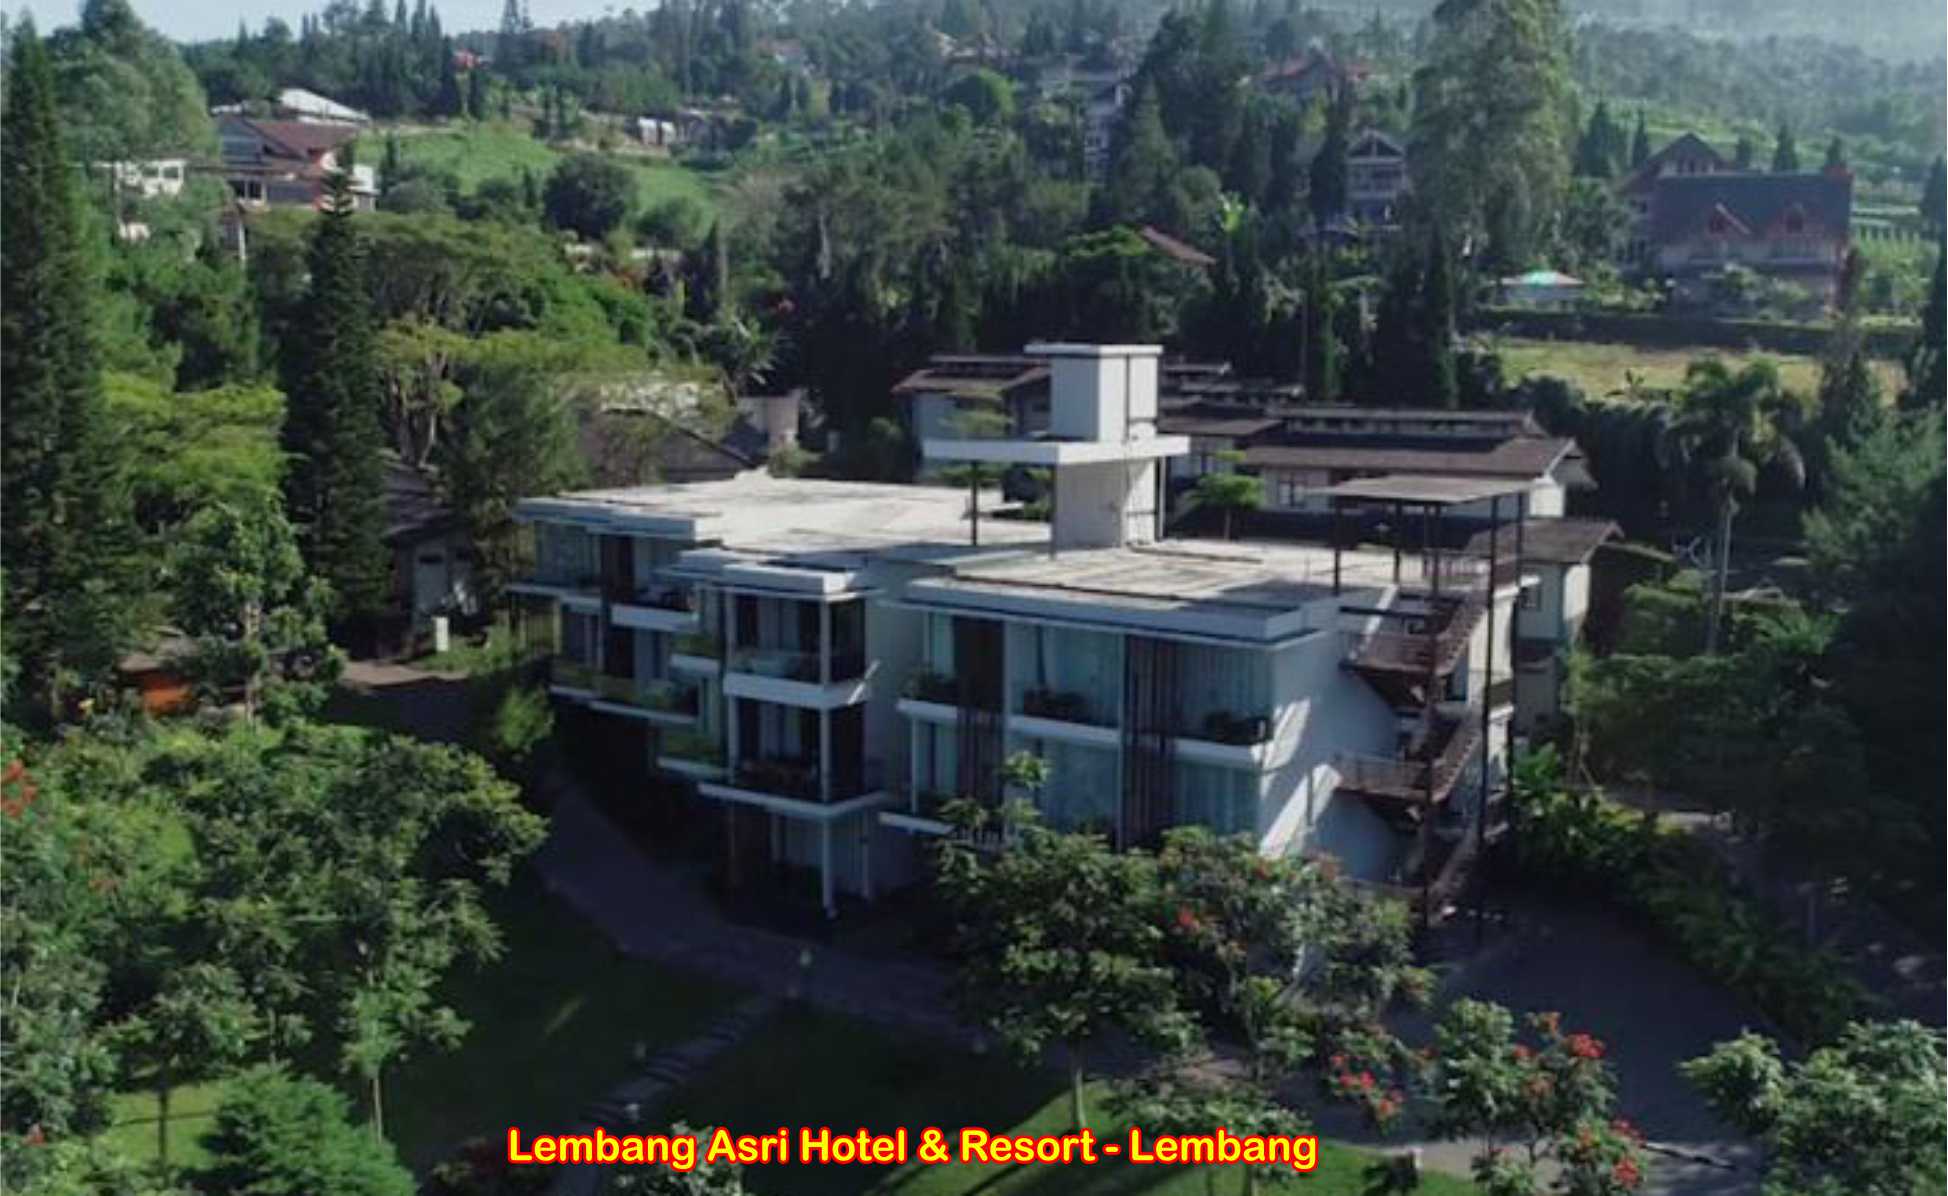 Lembang Asri Hotel & Resort, Lembang - Indonesia 1